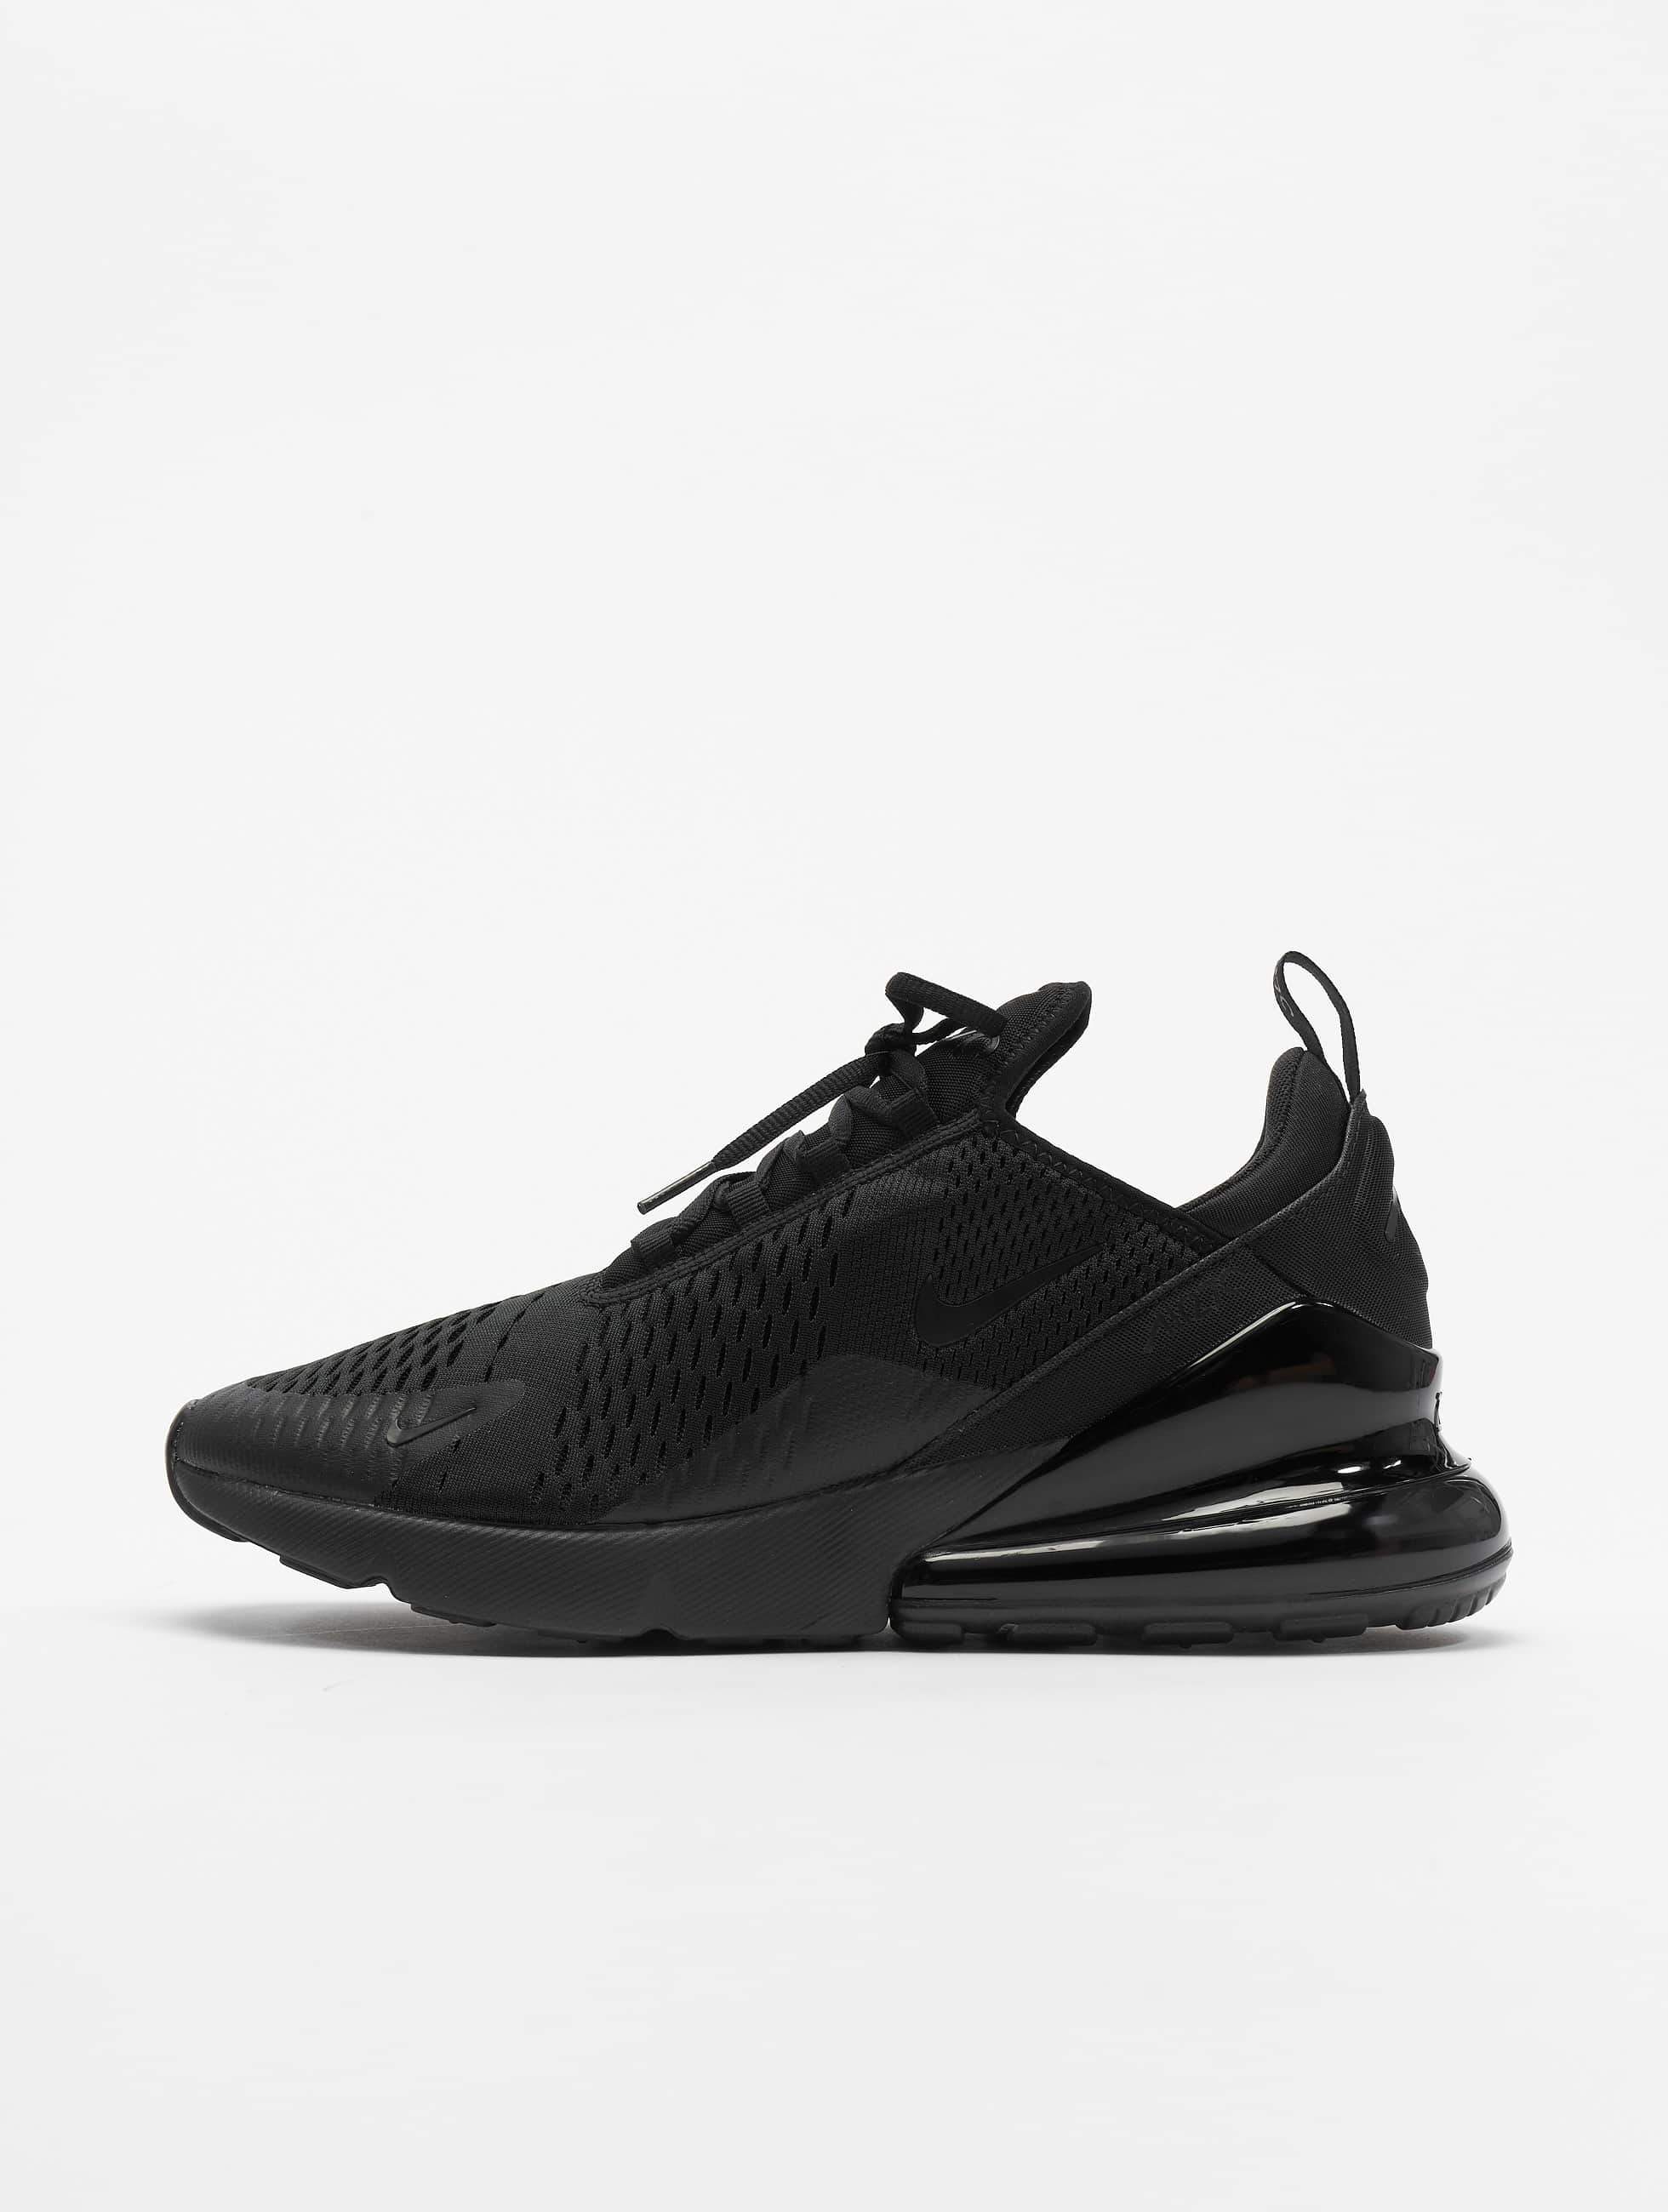 Pompeya esta ahí picar Nike Zapato / Zapatillas de deporte Air Max 270 en negro 537024